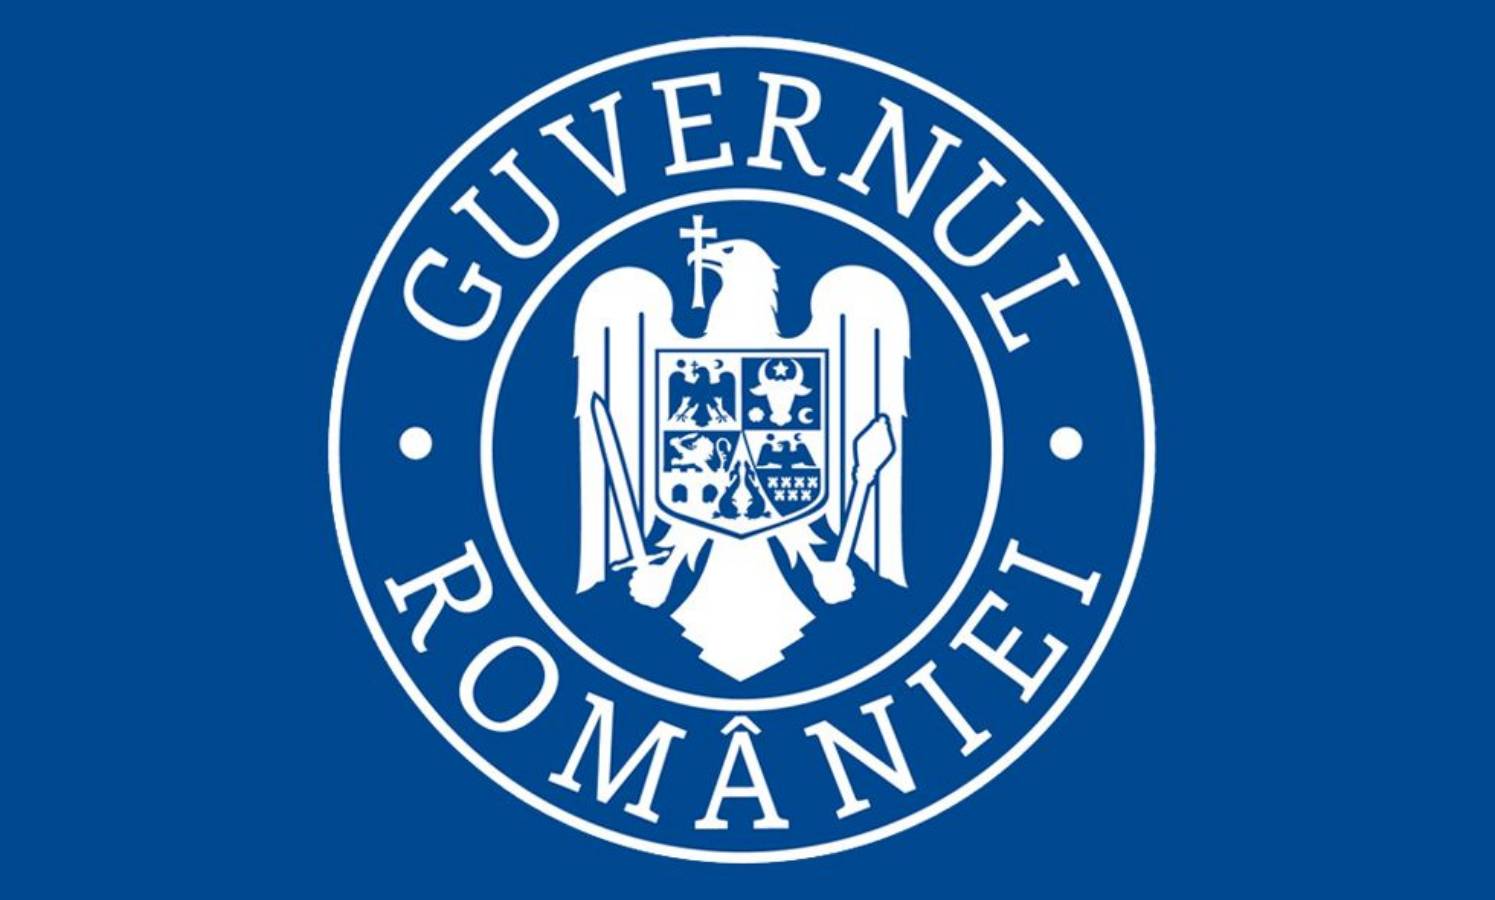 De regering van Roemenië heeft het coronavirus aangekondigd